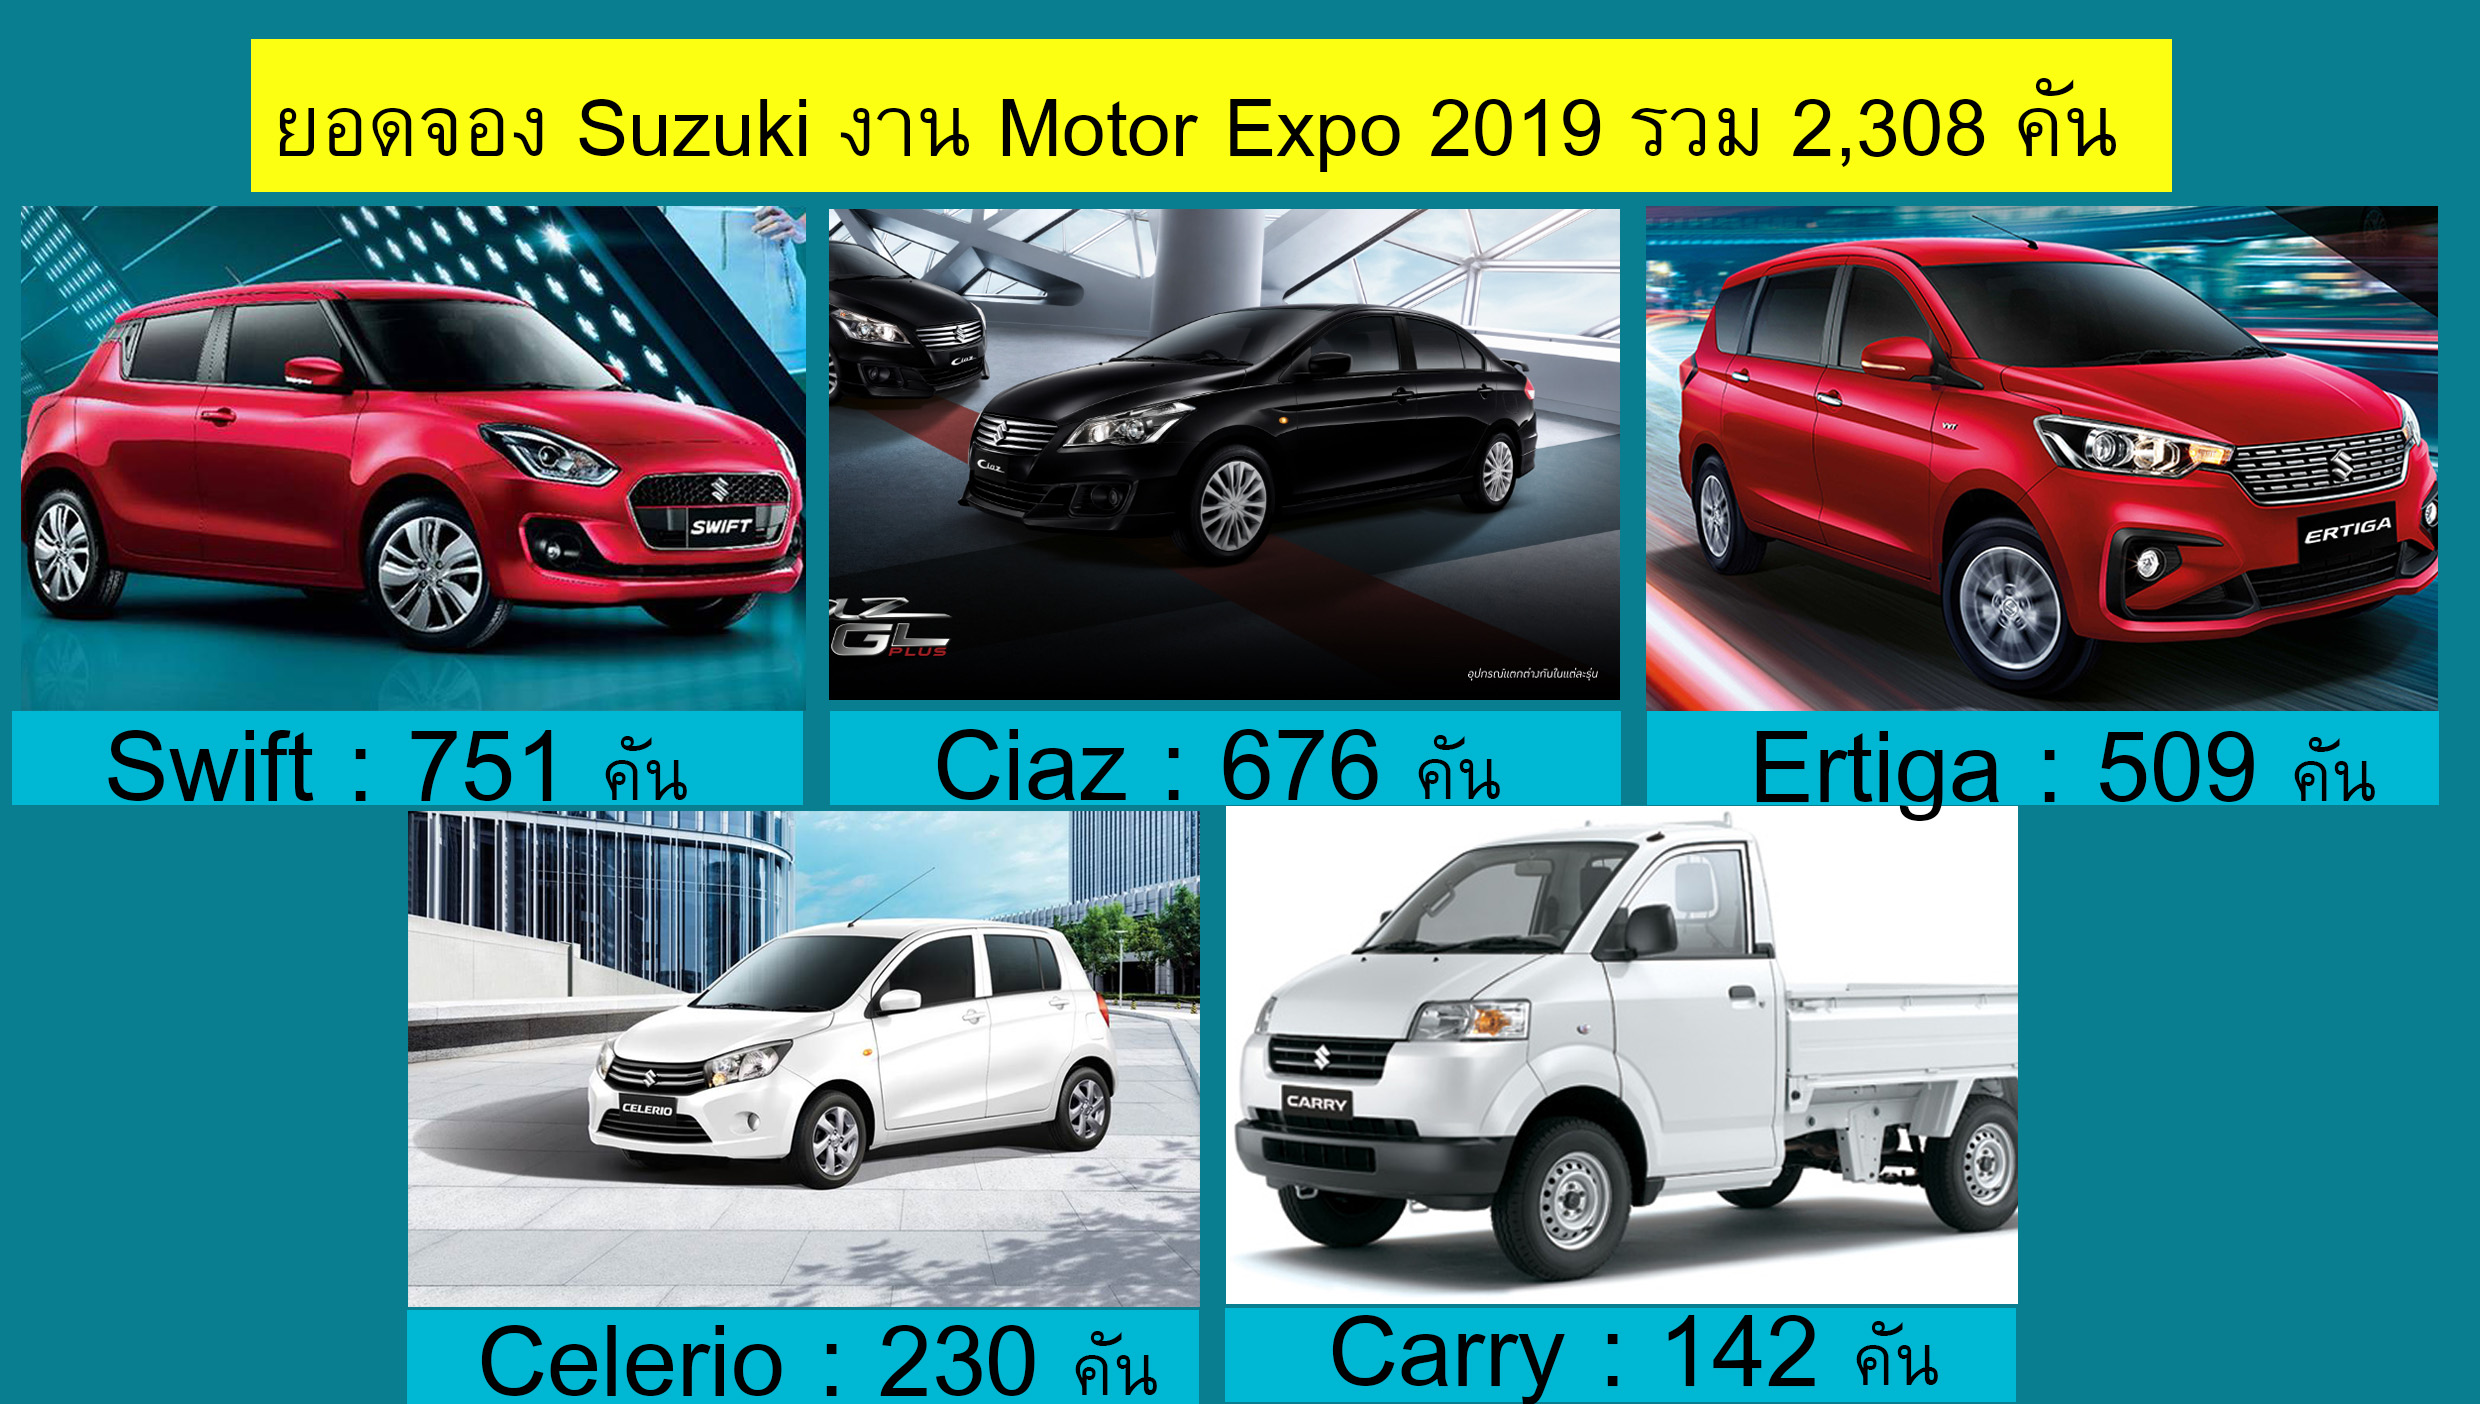 ยอดขาย Suzuki ในงาน Motor Expo 2019 รวม 2,308 คัน